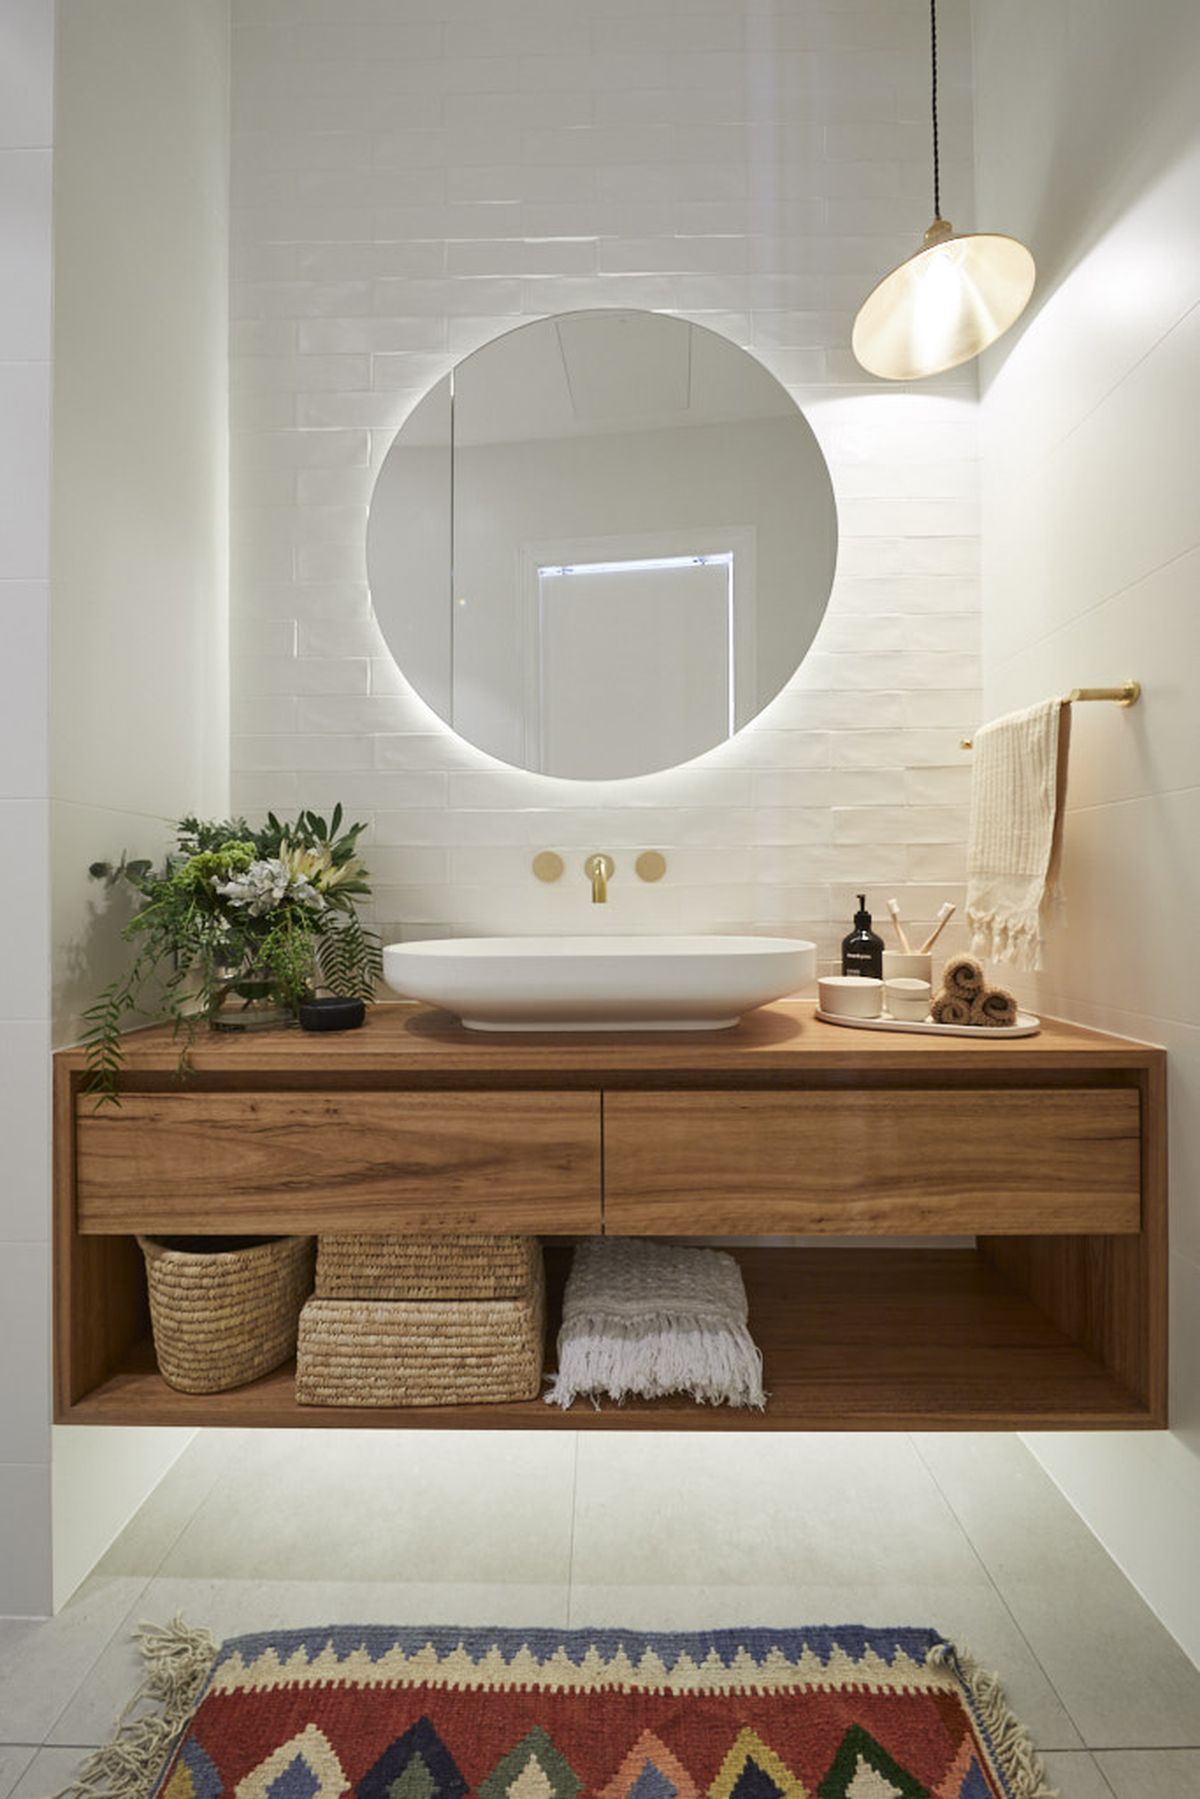 Tha hồ gom nhặt ý tưởng cho căn phòng tắm gia đình với những thiết kế đẹp miễn chê - Ảnh 8.